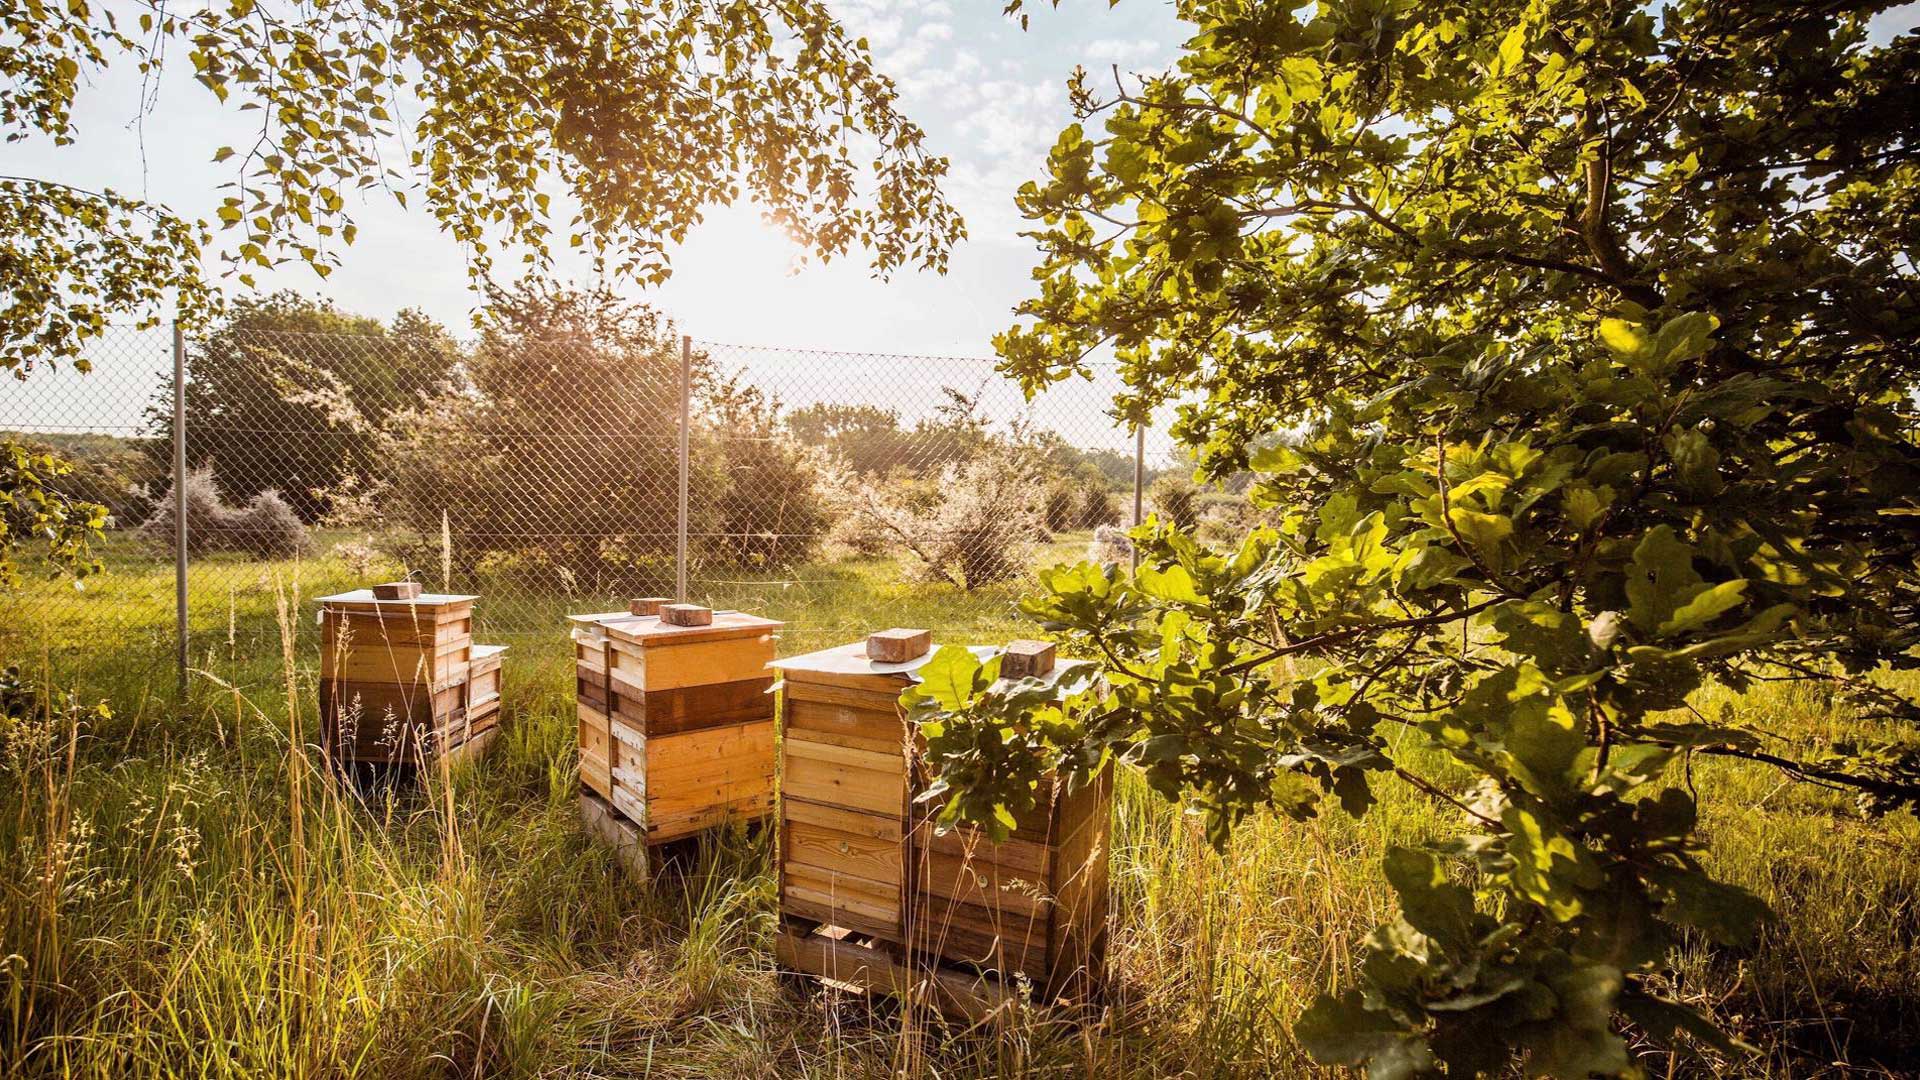 شعبه‌ی پورشه در شهر لایپزیش ۲۵ کلونی از کندوهای زنبورعسل دارد که با مدیریت و تولید عسل از آن‌ها، عسل خوراکی نیز تولید می‌کند.